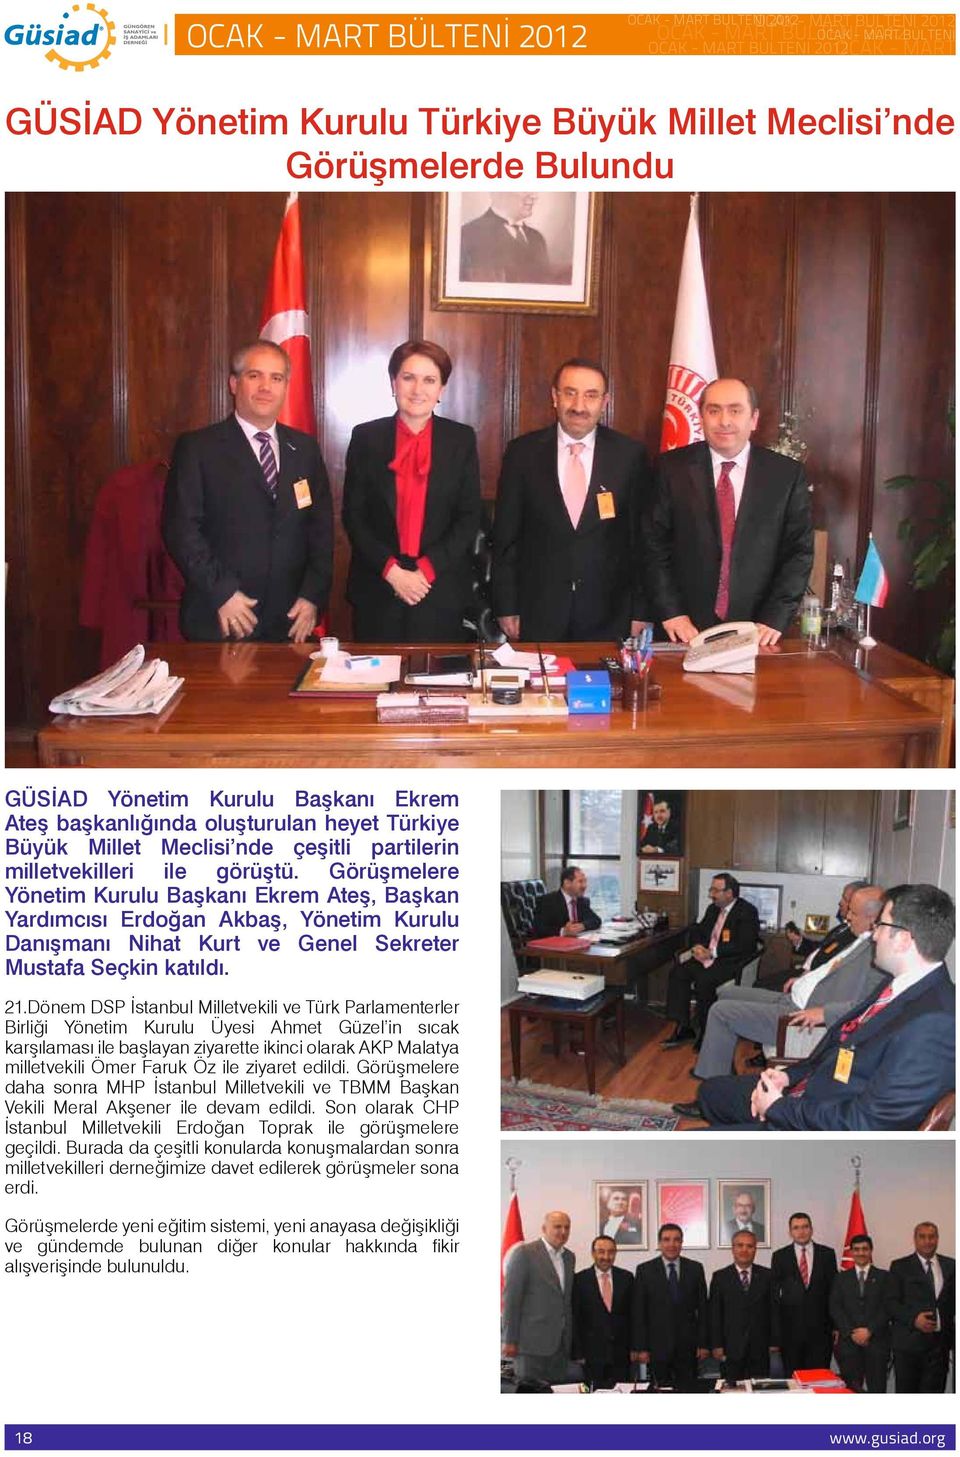 Görüşmelere Yönetim Kurulu Başkanı Ekrem Ateş, Başkan Yardımcısı Erdoğan Akbaş, Yönetim Kurulu Danışmanı Nihat Kurt ve Genel Sekreter Mustafa Seçkin katıldı. 21.